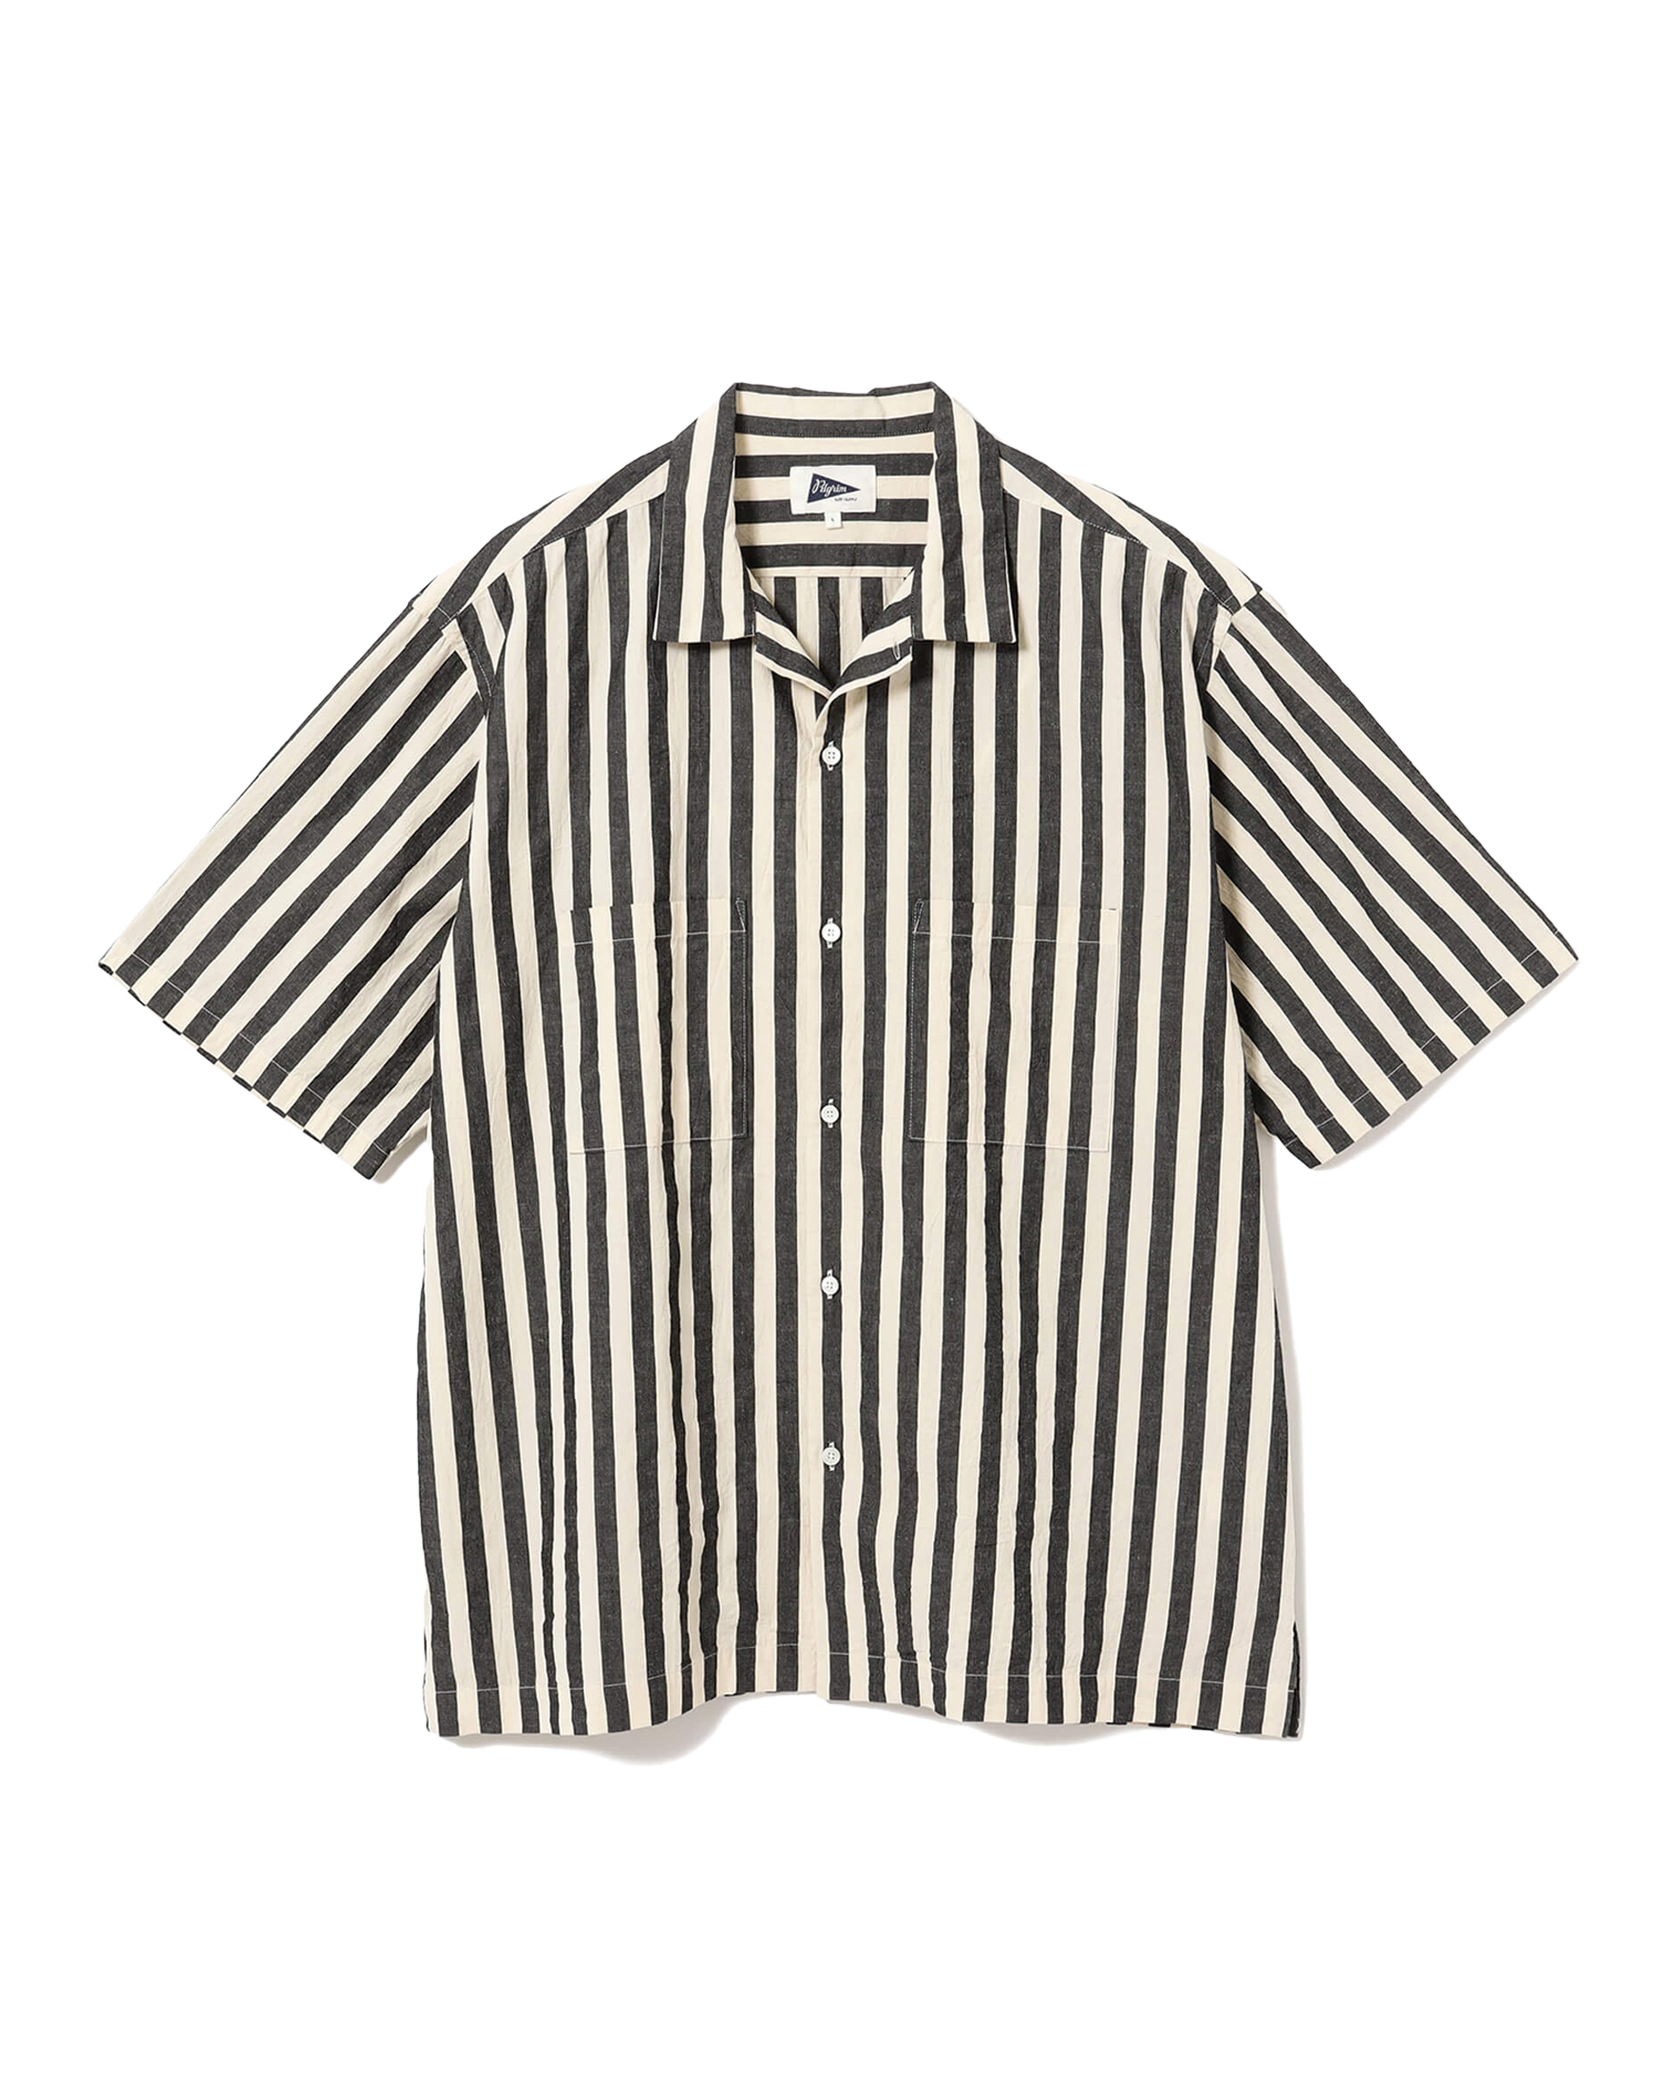 Pilgrim Surf + Supply - Shirt - Johnny Stripe - Short Sleeve Shirt - Bold Stripe